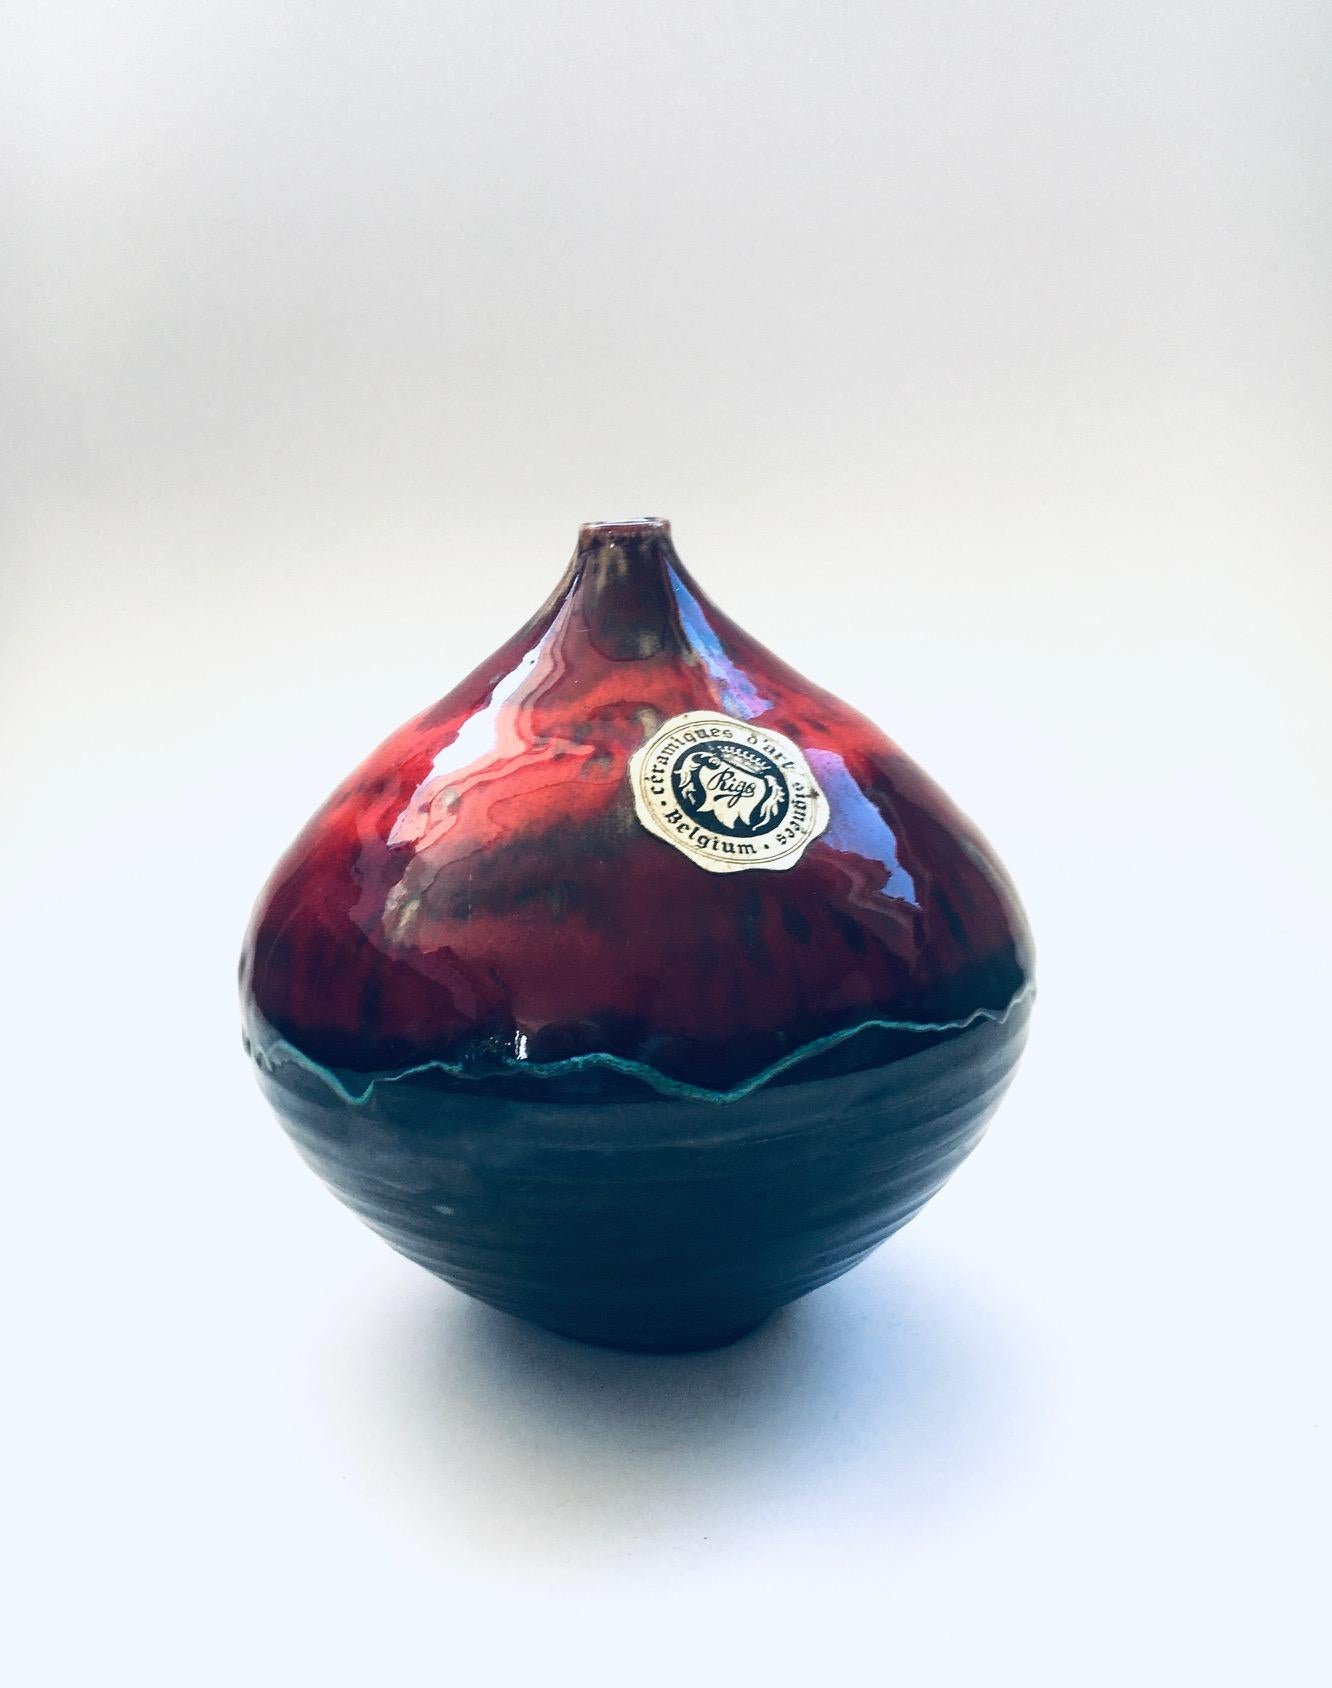 Vintage Midcentury Studio Art Pottery Ceramic Céramiques d'Art Signée Spout Vase, made in Belgium 1960's. Vase en céramique fait à la main en métal noir sous glaçure avec des surglaçages rouge et orange. En très bon état. Dimensions : 16 cm x 15 cm